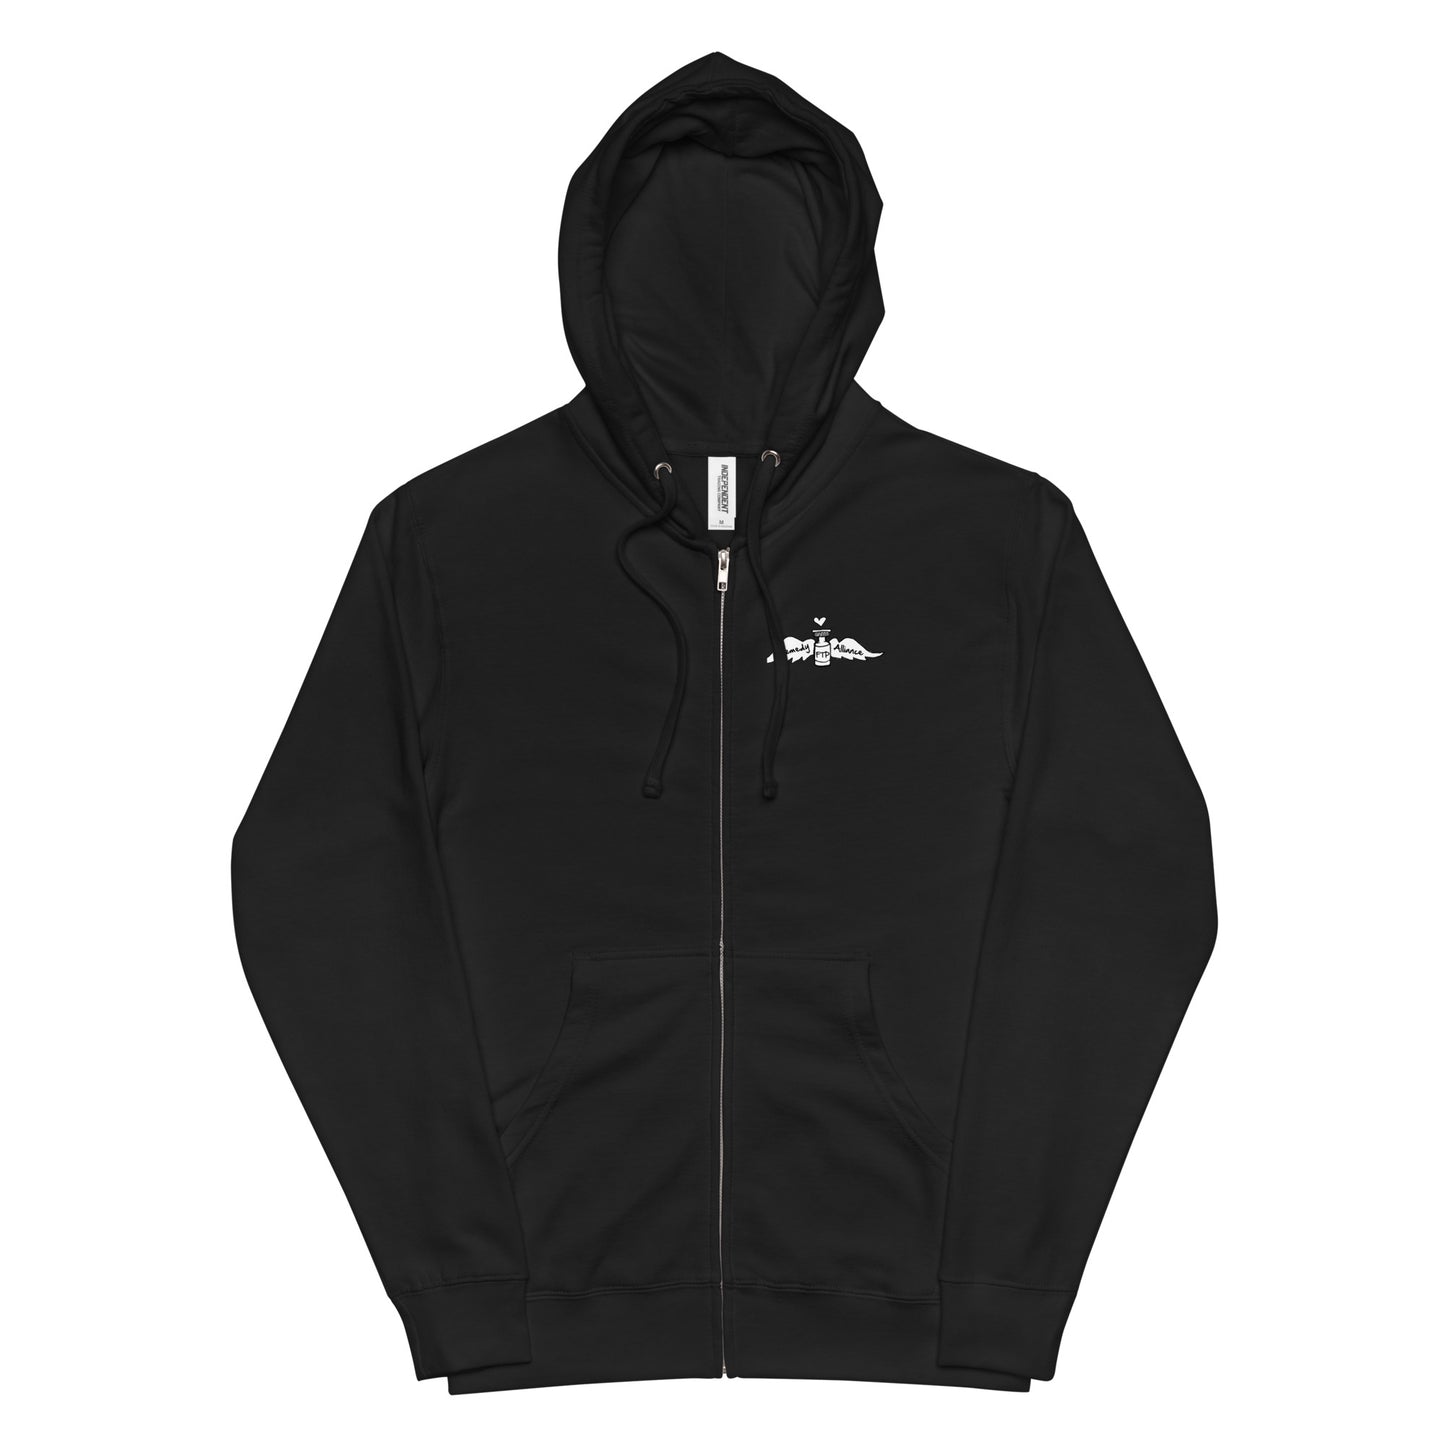 Liberate Naloxone Zip-up hoodie